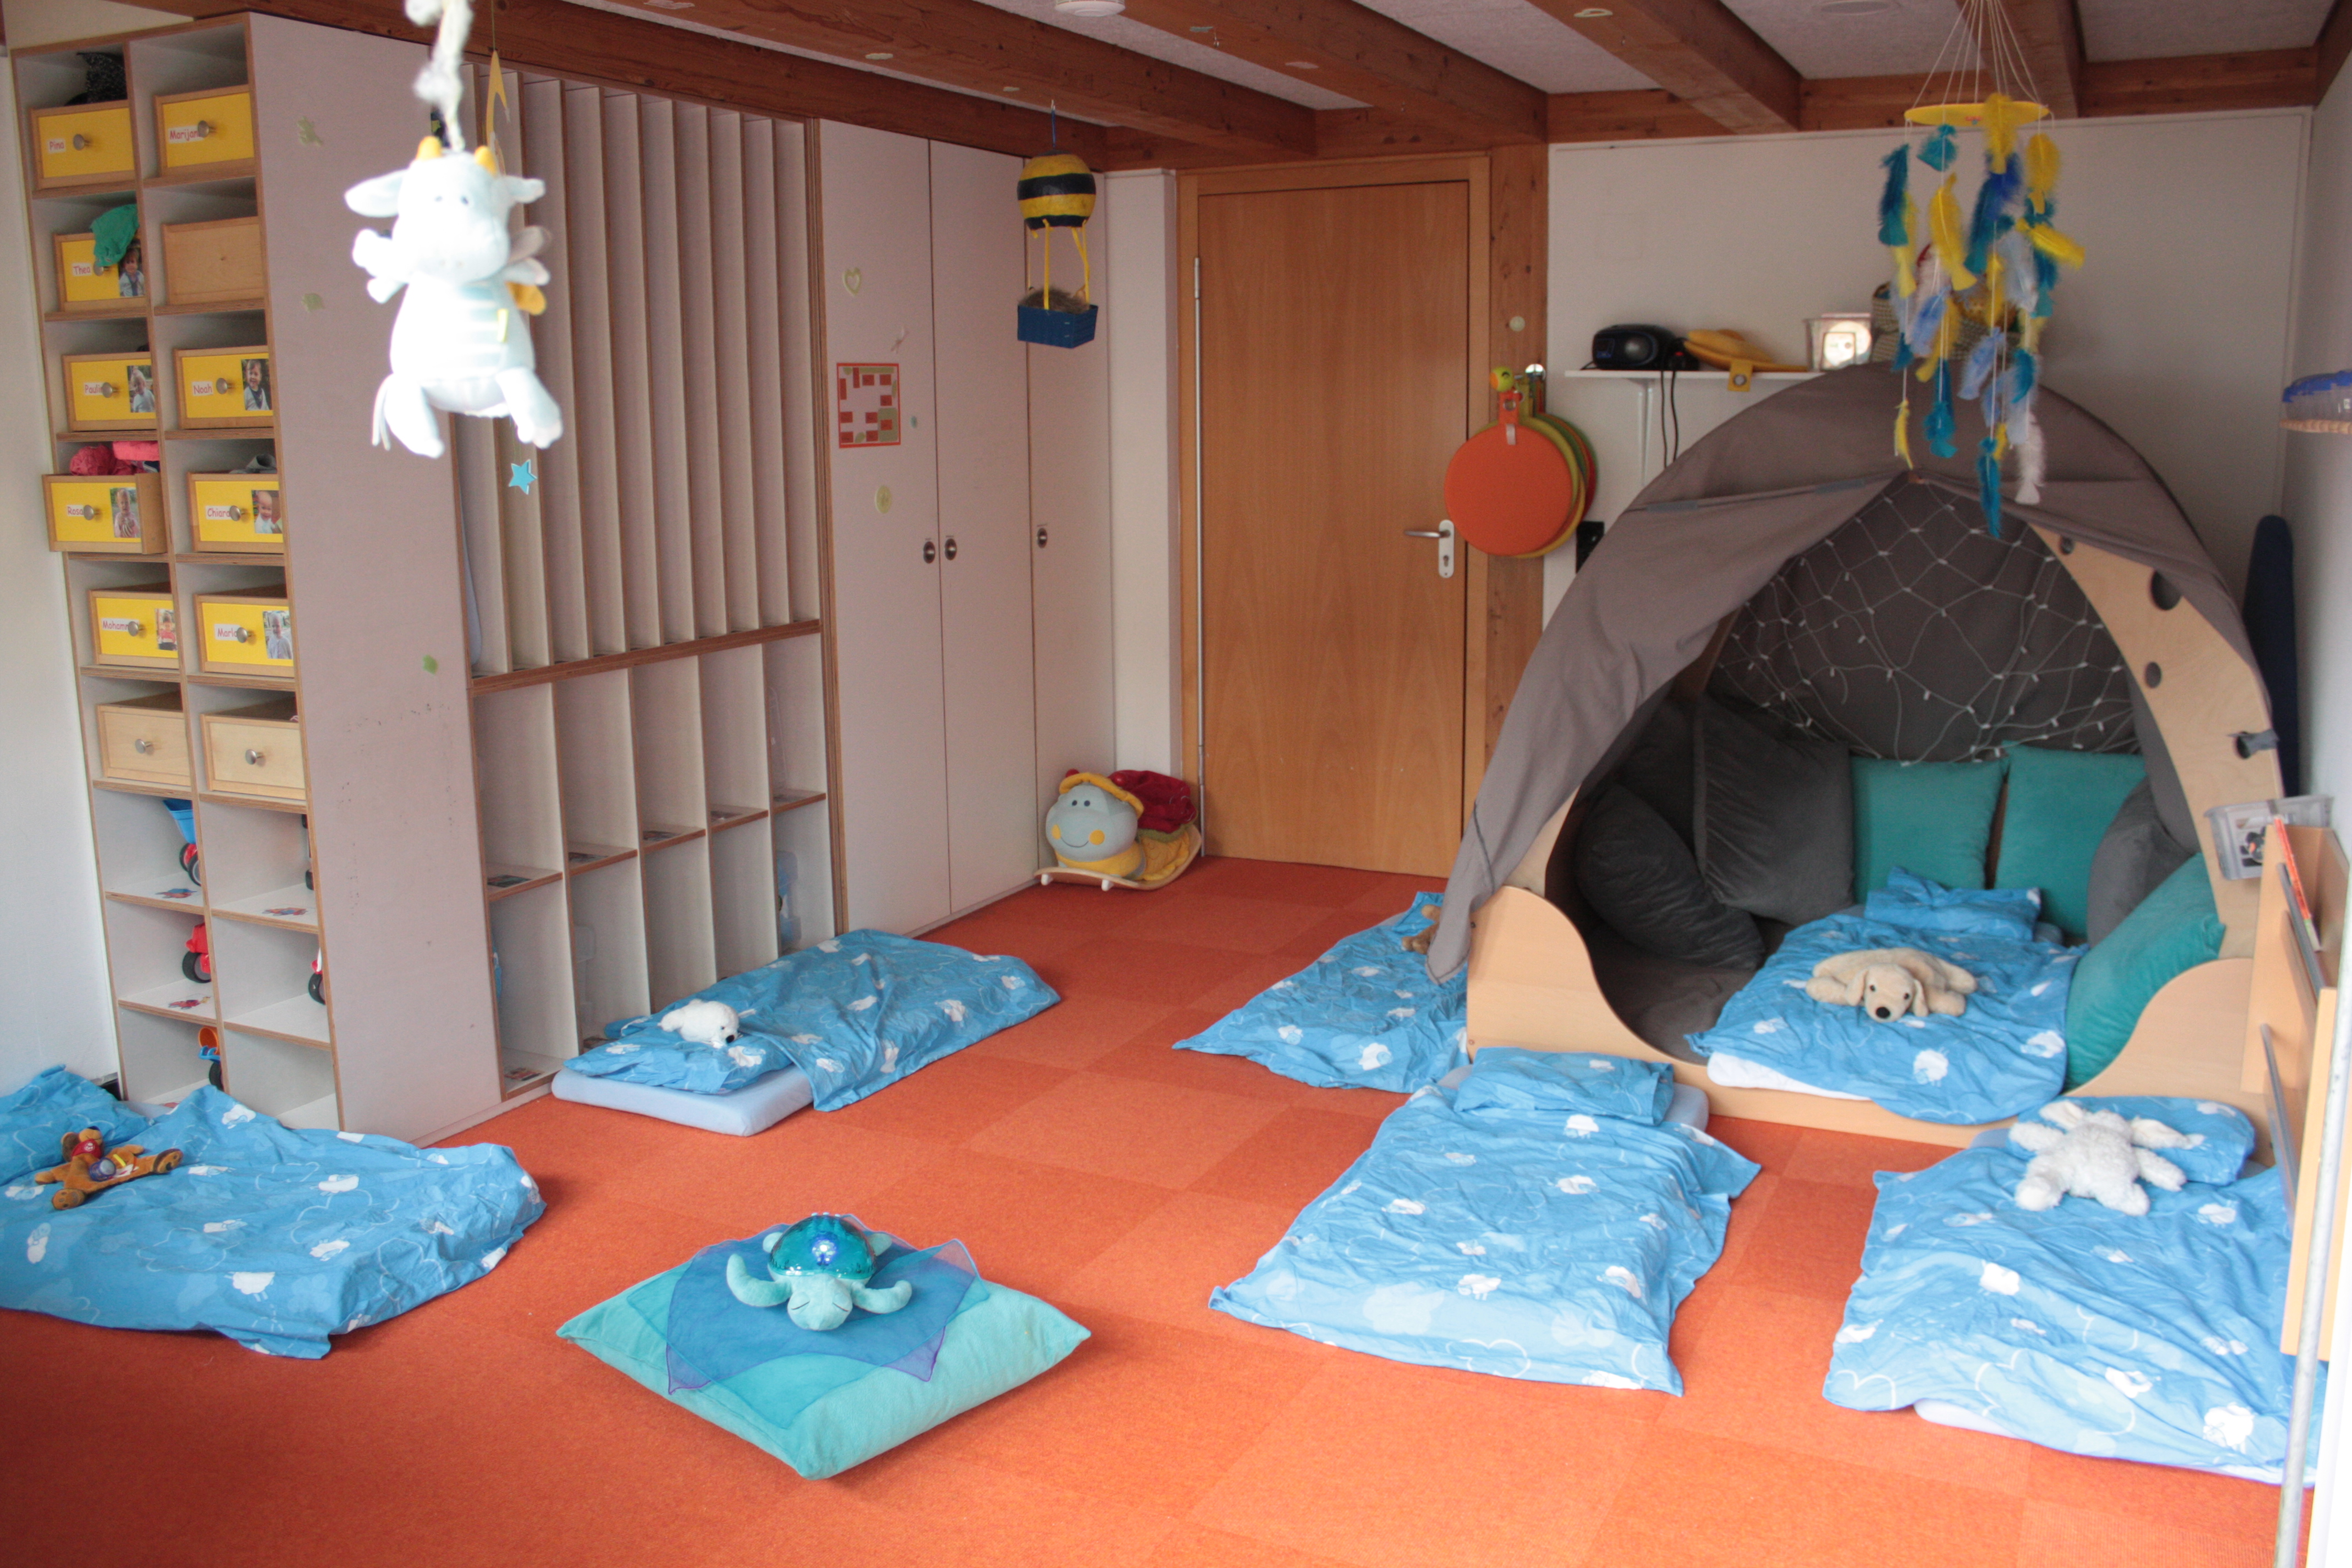 Es sind Matratzen mit blauer Bettwäsche und Kuscheltieren auf dem Boden abgebildet. Links ist ein Einbauregal mit  Schubladen für die einzelnen Kinder und rechts ist eine Kuschelhöhle aus Holz mit vielen Kissen erkennbar.